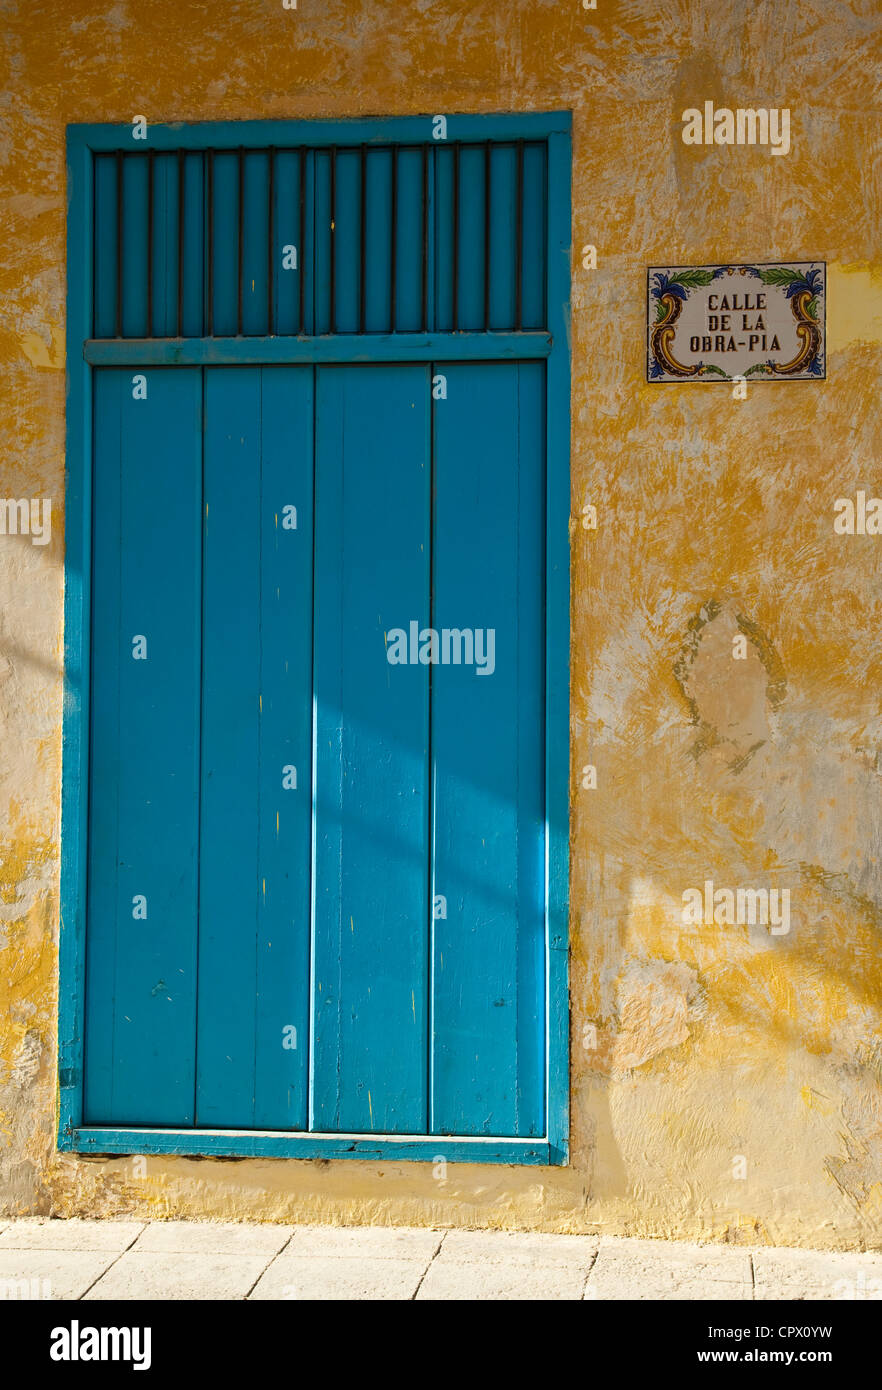 Tradizionale blu e giallo edificio in Calle de la obre-pia Vecchia Havana Cuba Foto Stock